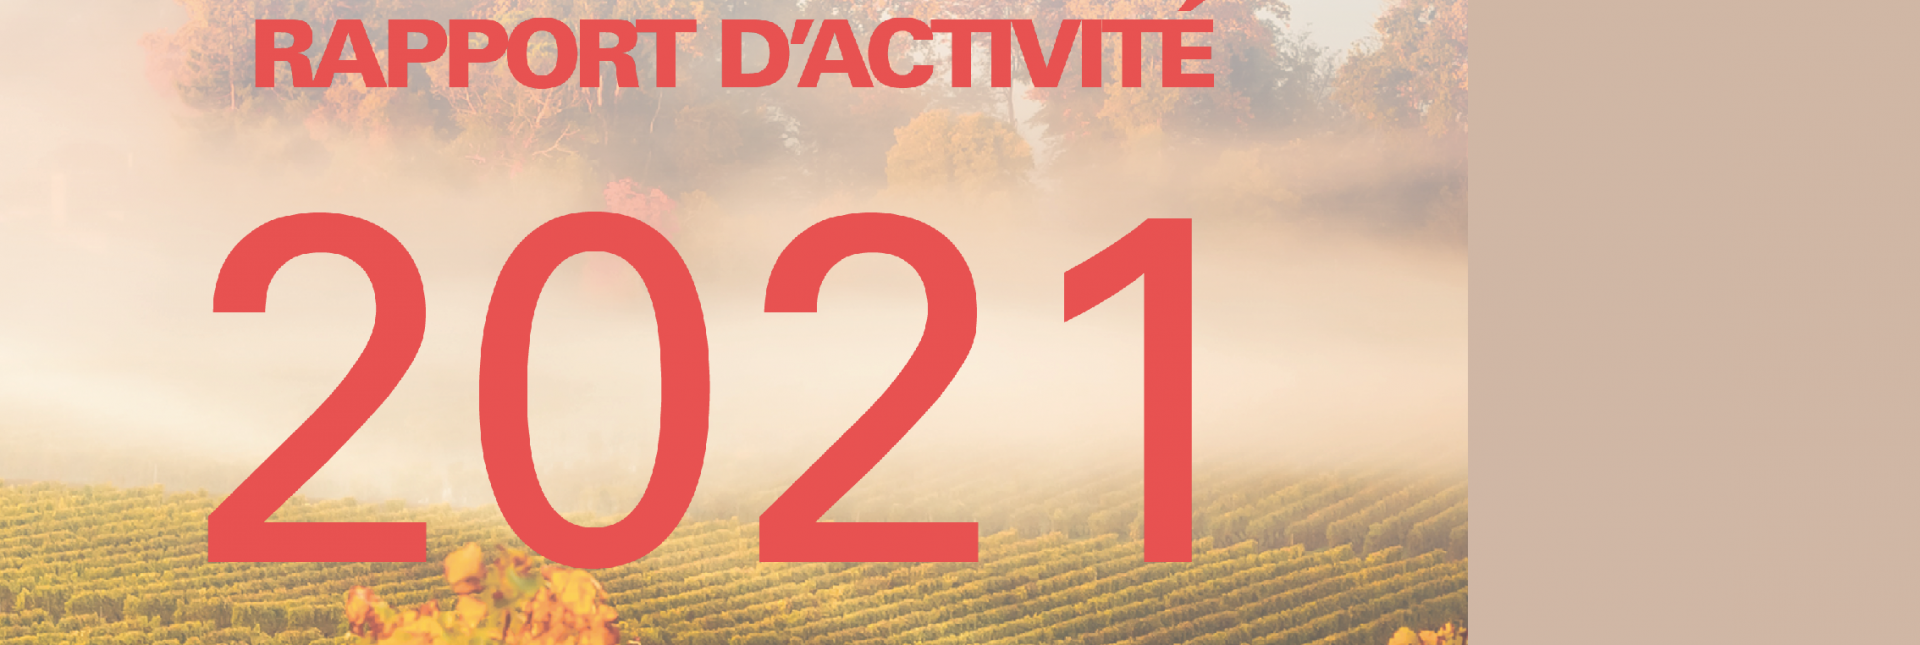 Le rapport d'activité 2021